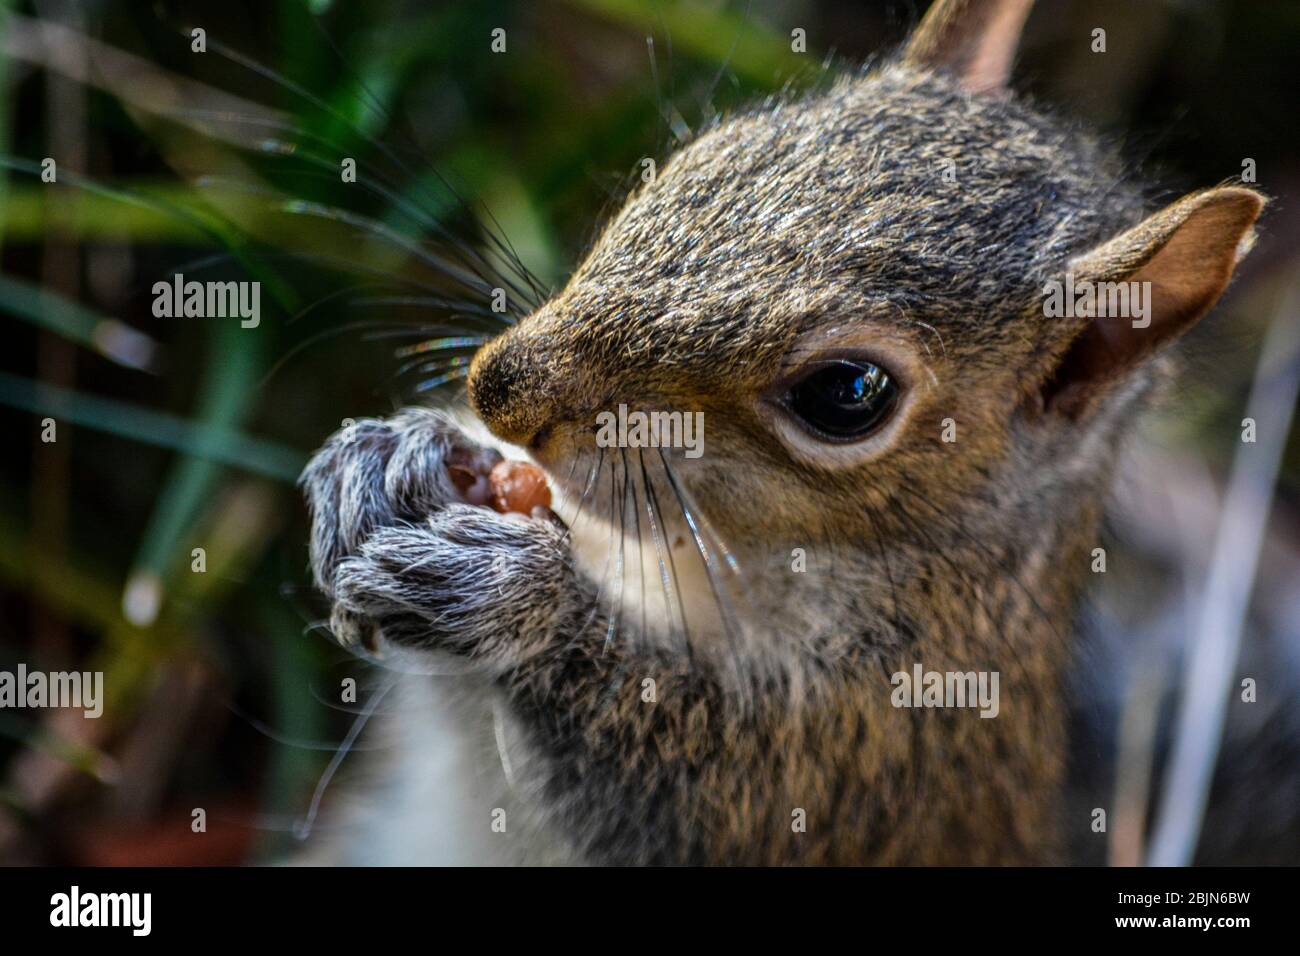 Profitez tranquillement d'un repas. Écureuil gris de l'est (Sciurus carolinensis). Floride, U. S. A. , Amérique du Nord. Banque D'Images